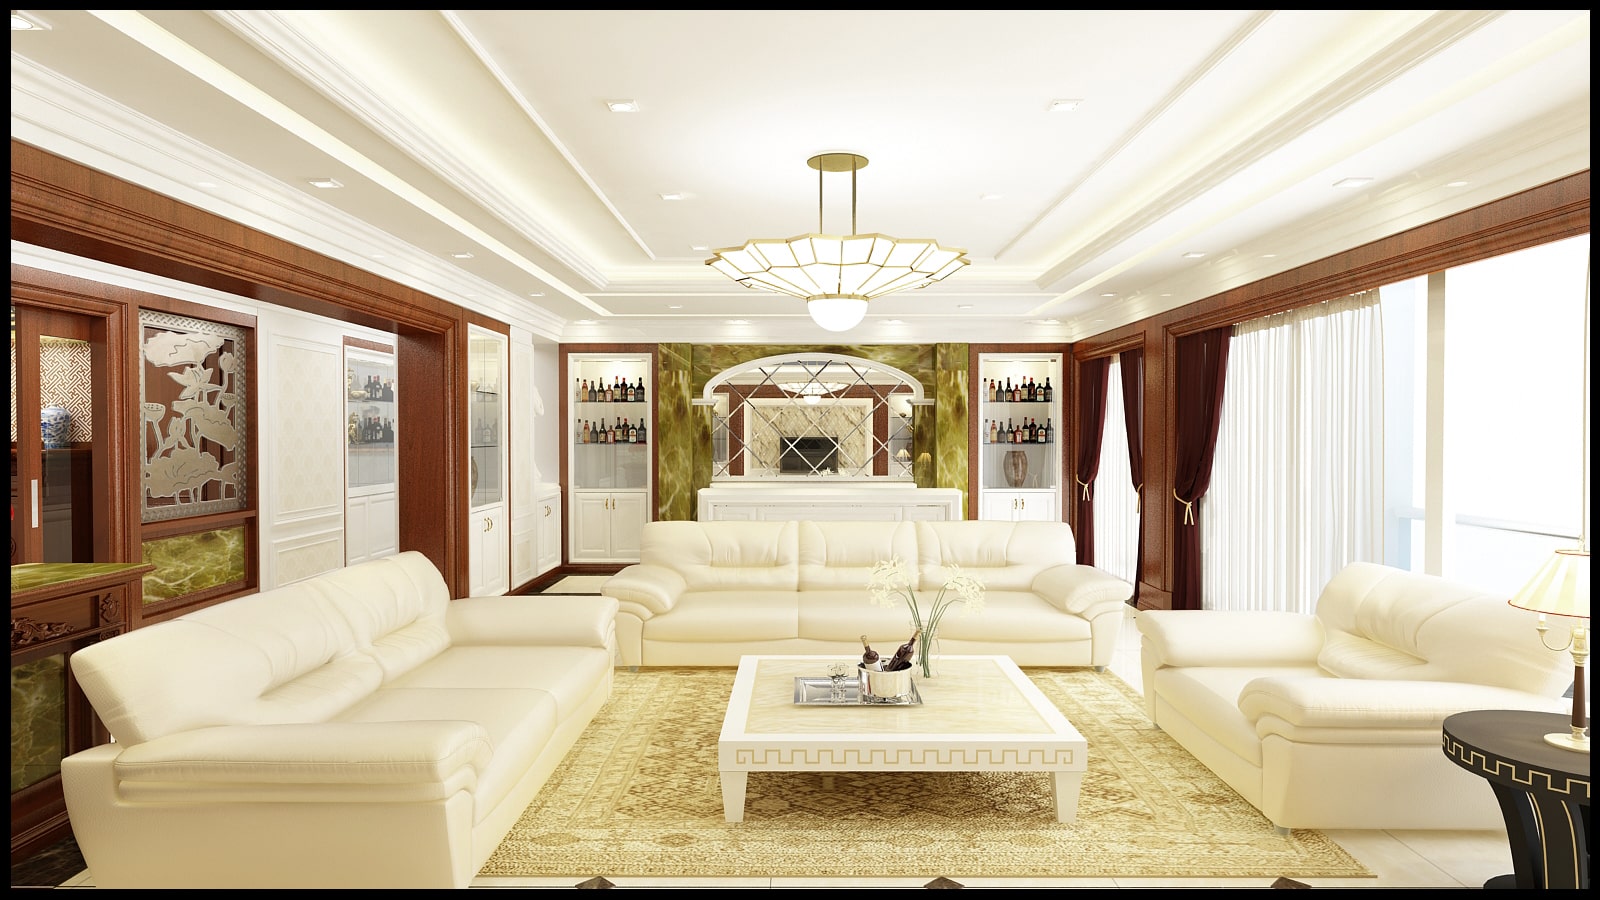 Nội thất phòng khách tân cổ điển mang đến sự cổ điển và thanh lịch cho không gian sống của bạn. Tất cả đồ nội thất được chọn lựa kỹ càng và đặt trong một môi trường tinh tế. Hãy đến và cảm nhận sự ấn tượng và tinh tế của phòng khách này.